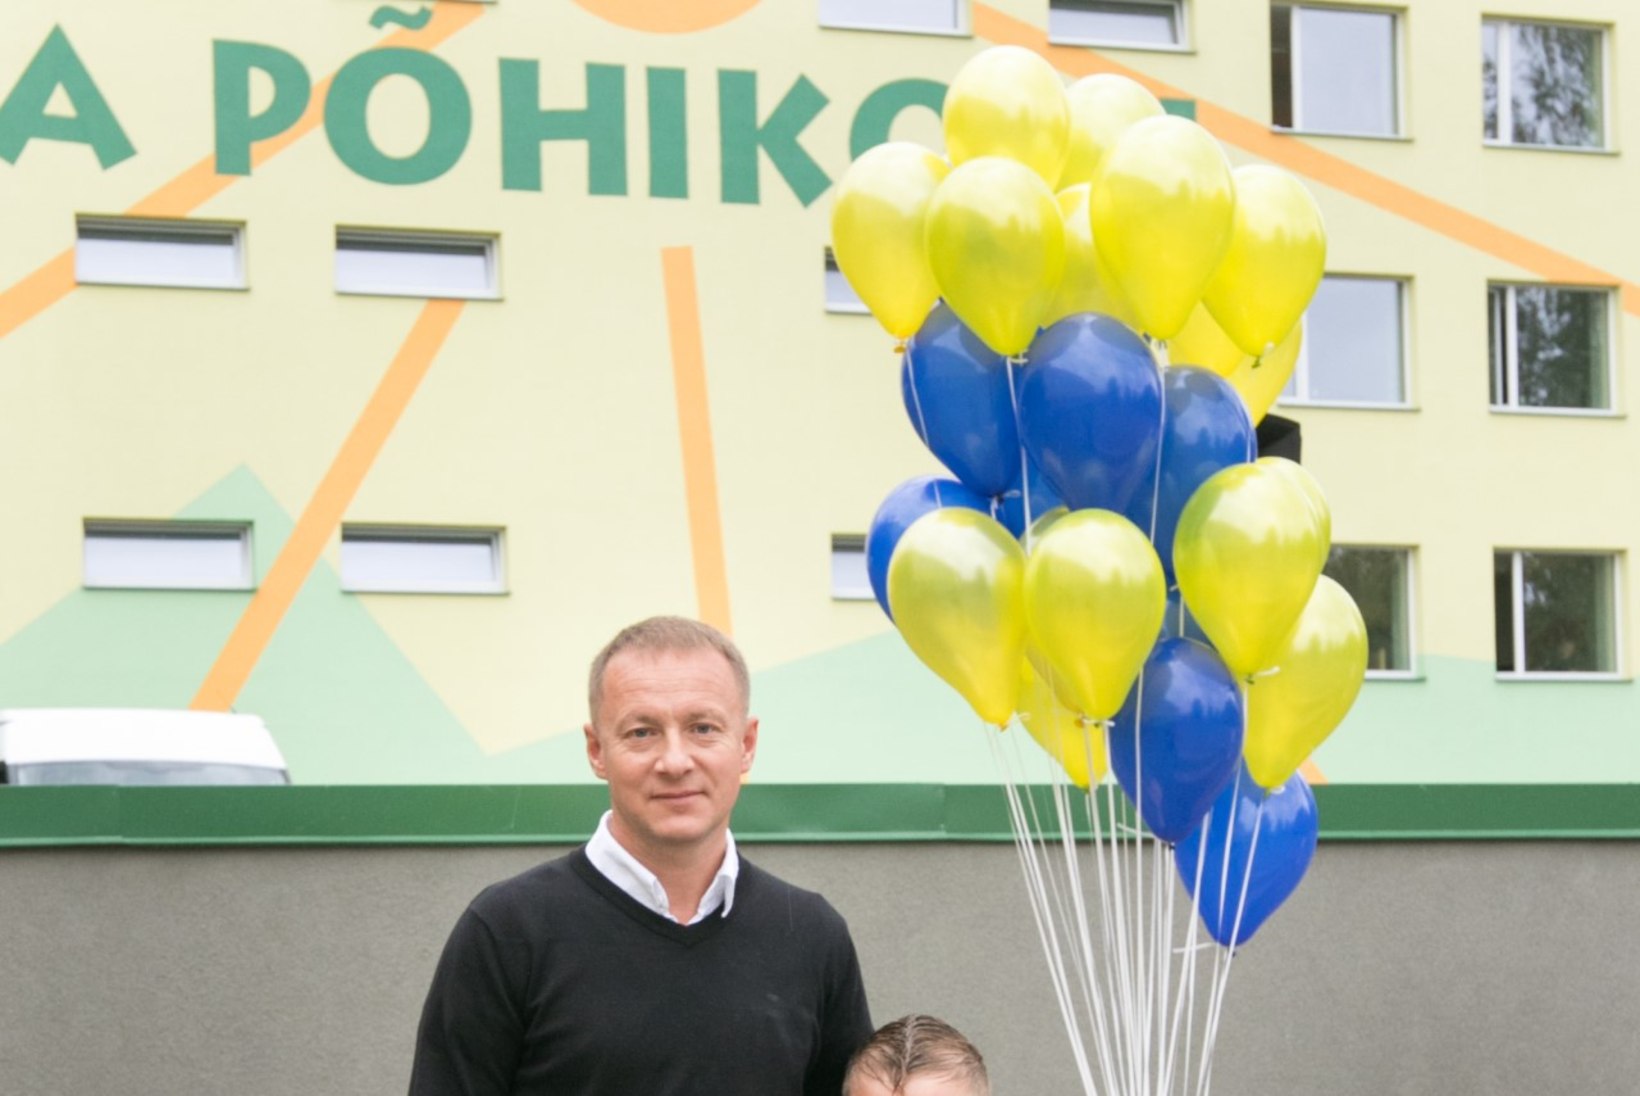 Pavel Loskutov ­kahtlustab, et poeg ei jaksa tunni lõpuni paigal püsida